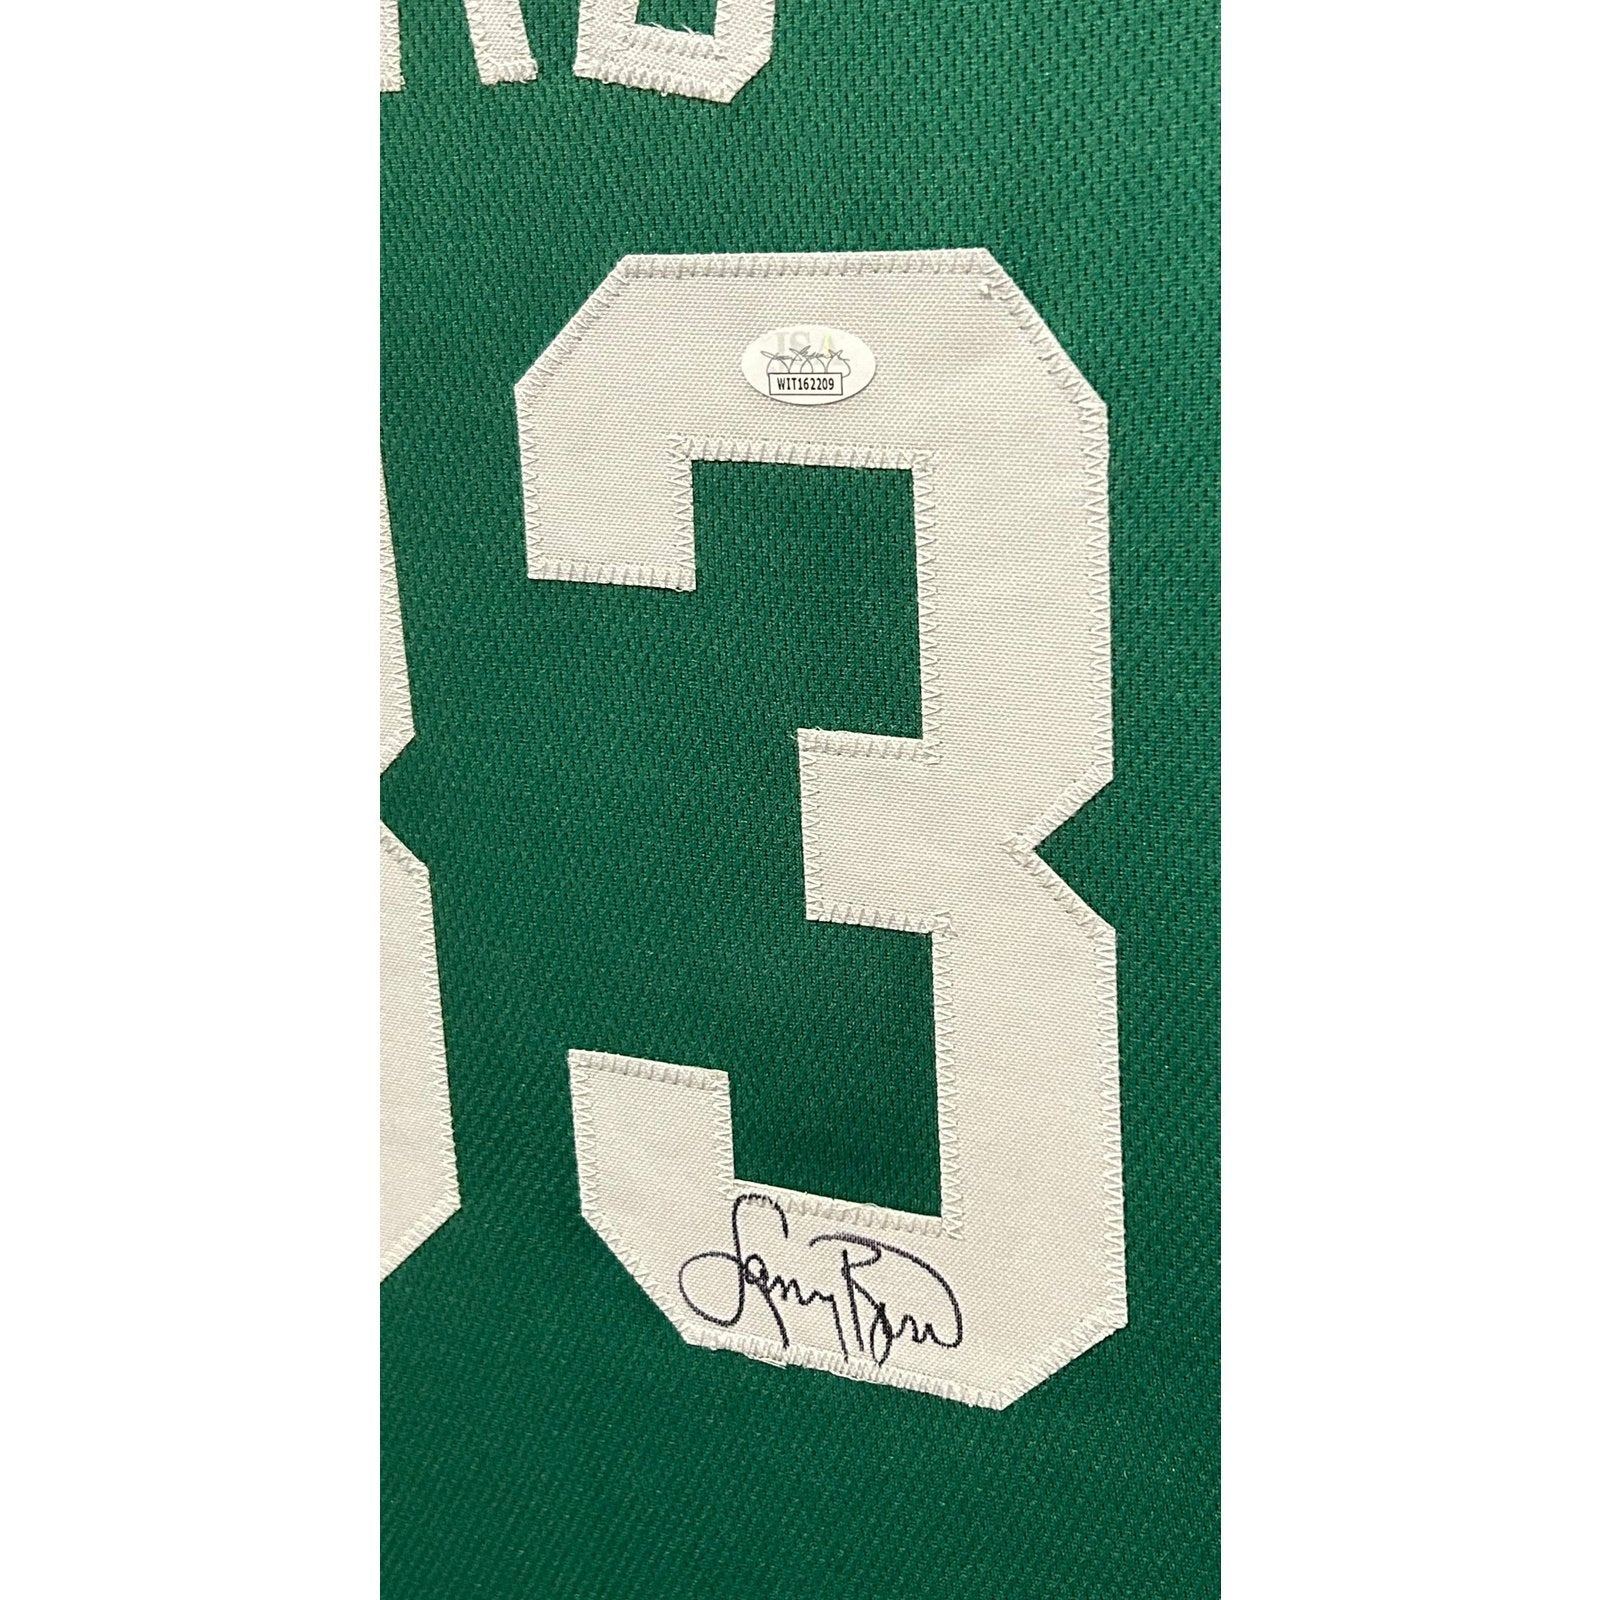 Larry Bird Signed Framed Jersey JSA Autographed Boston Celtics